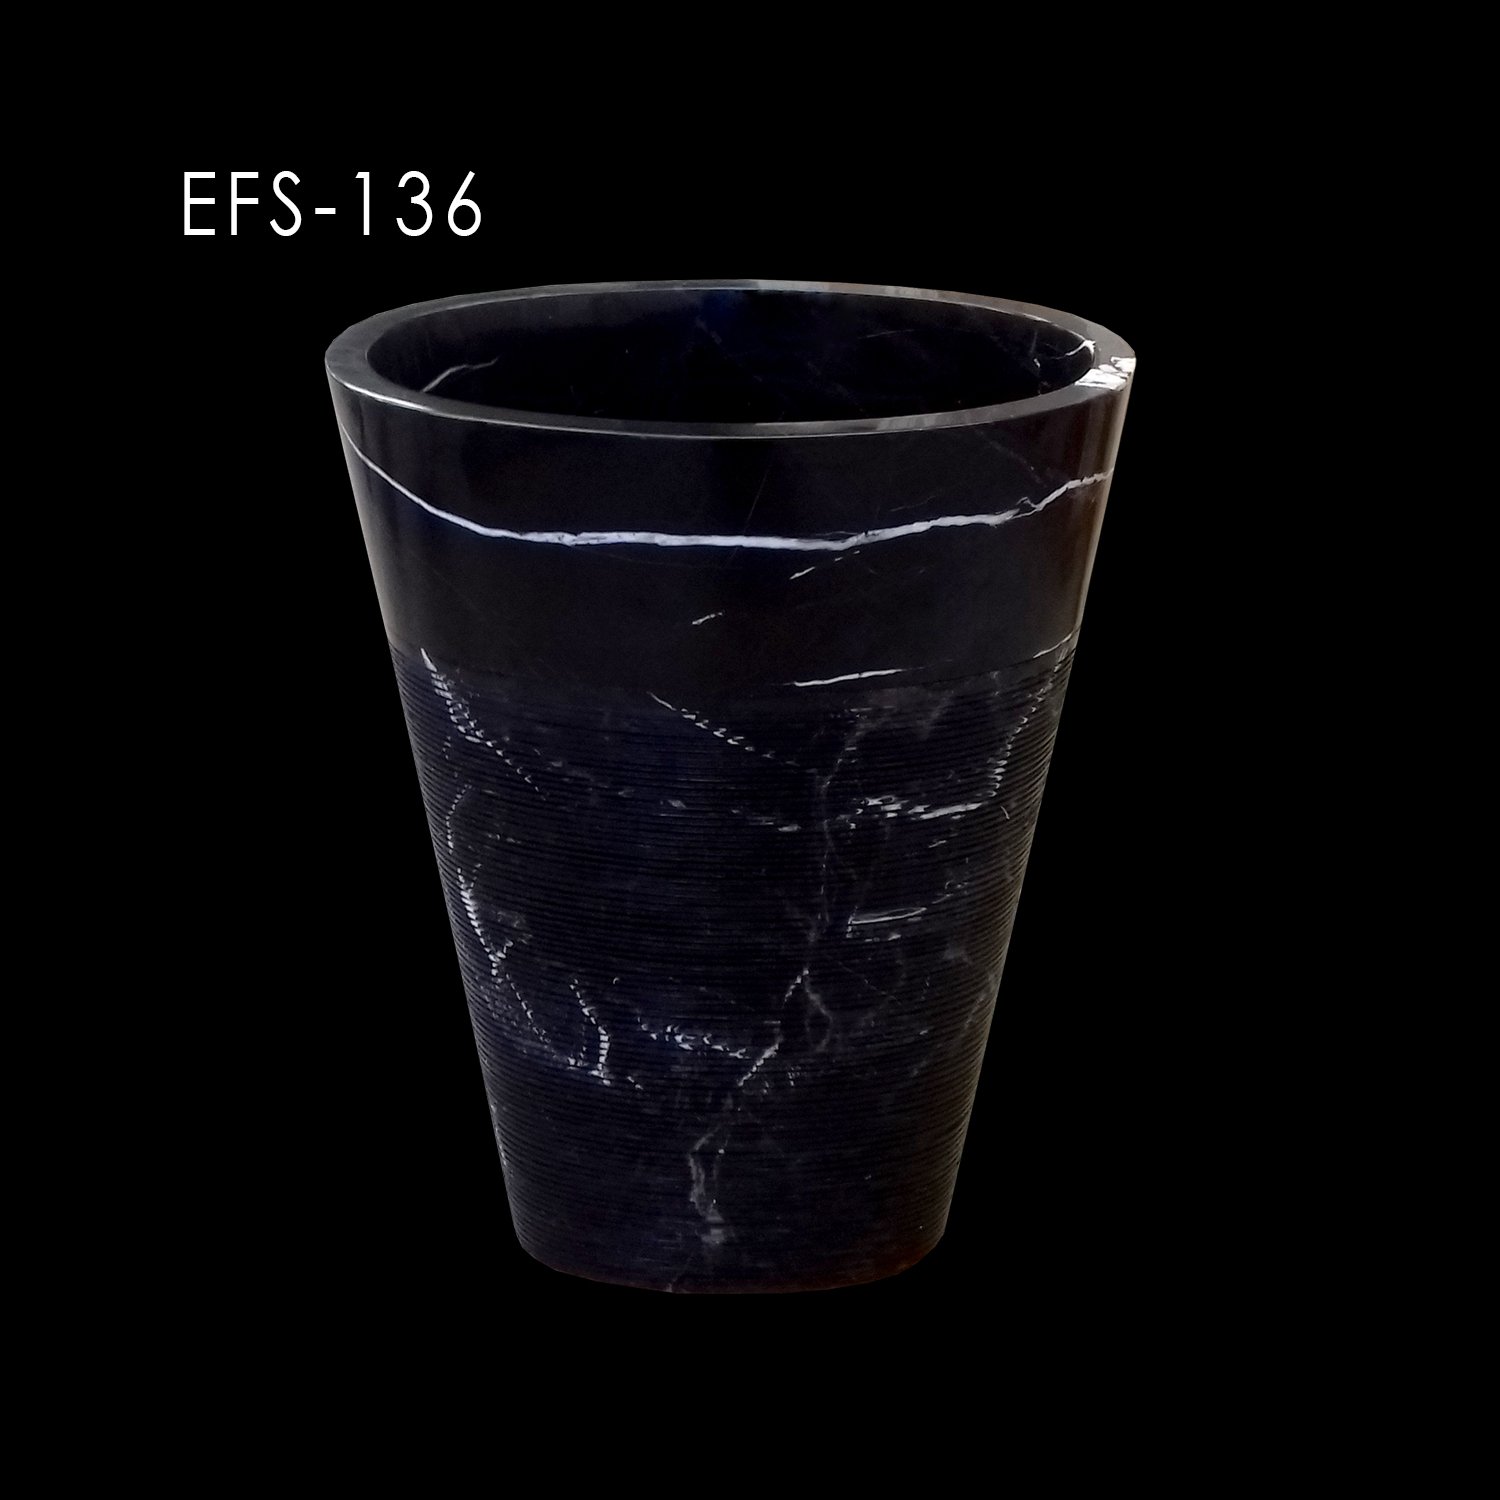 efs136 - efesusstone mermer